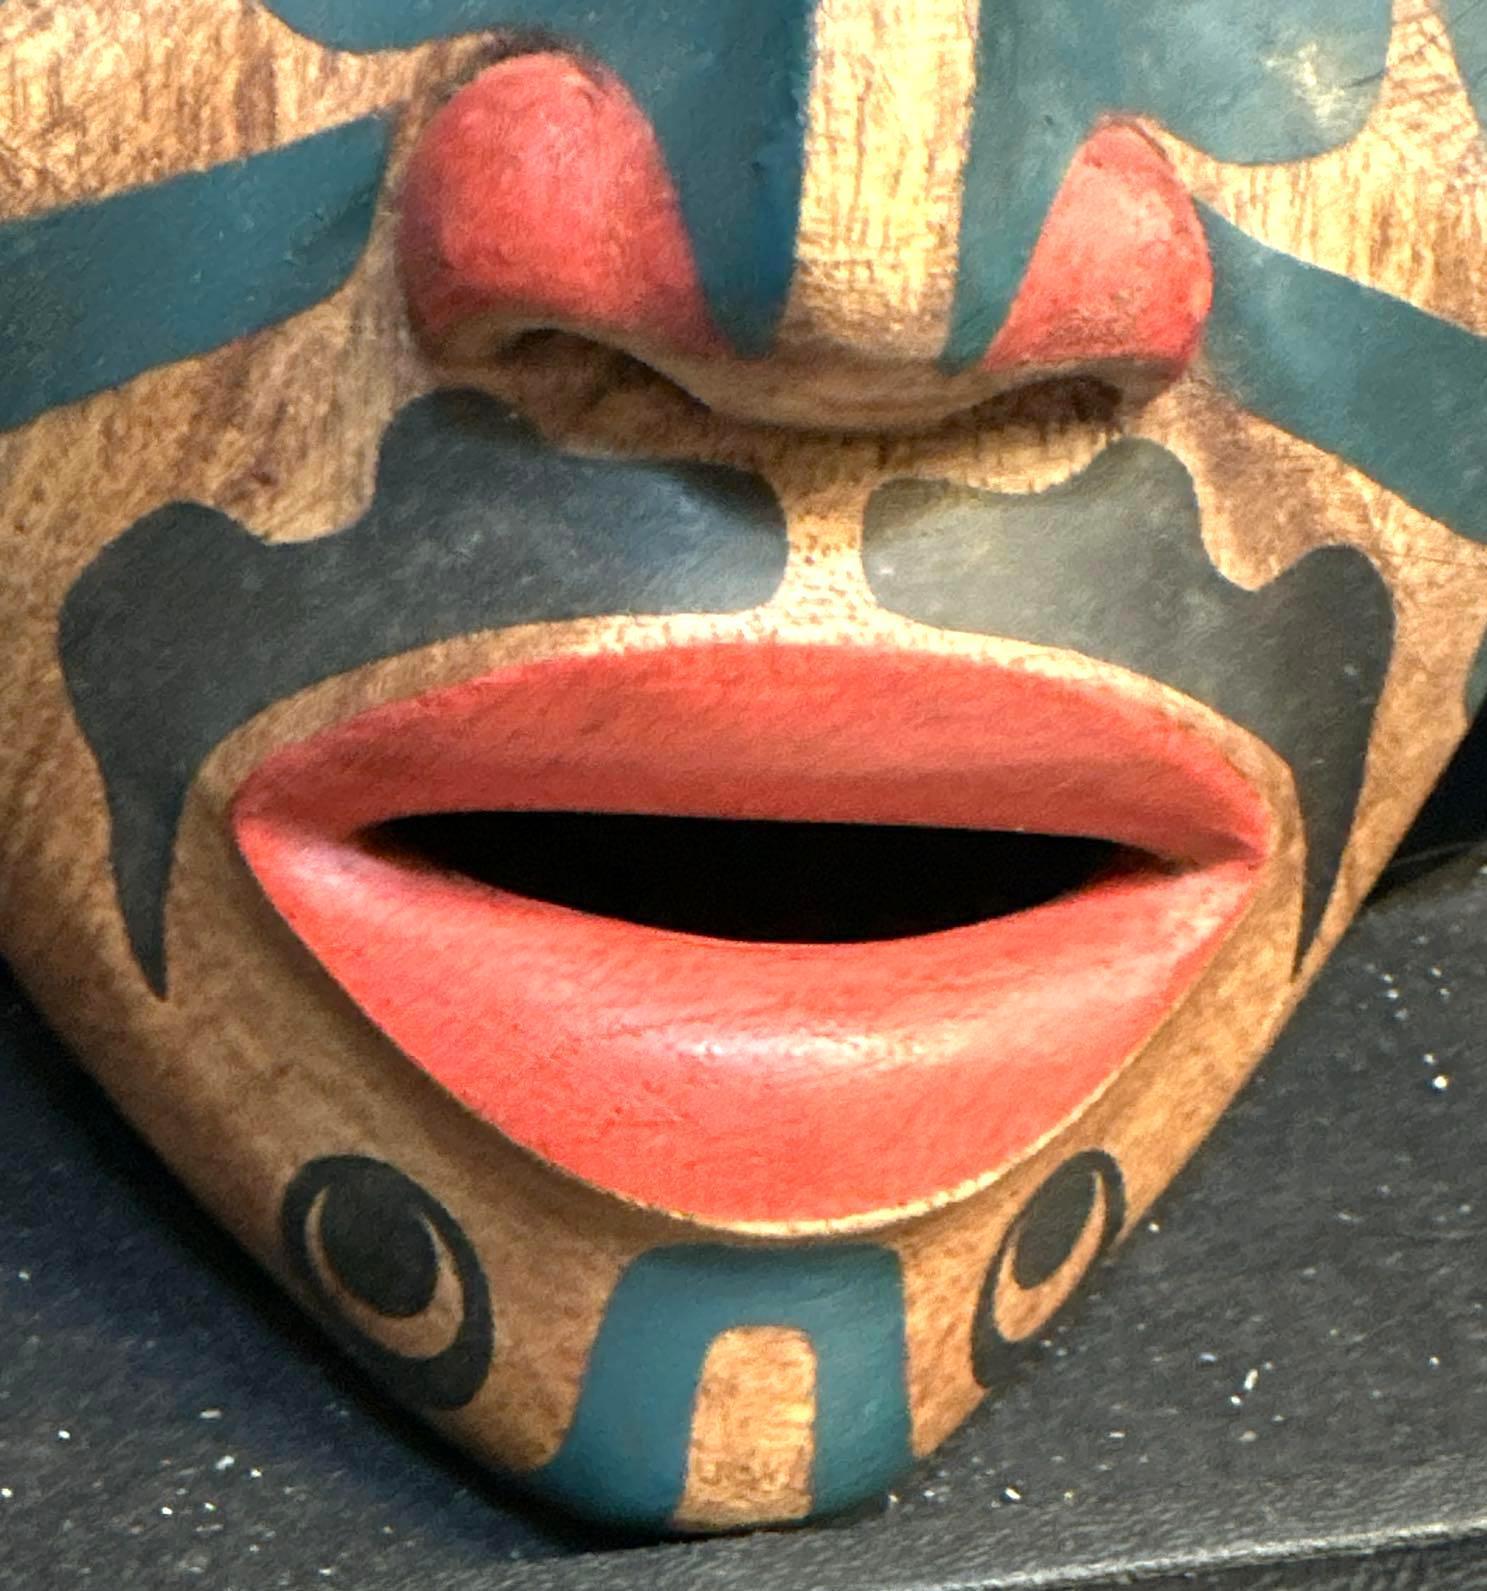 Carved wood Northwest Coast Painted Mask- Looks like Tlingit or Haida- with abalone eyes